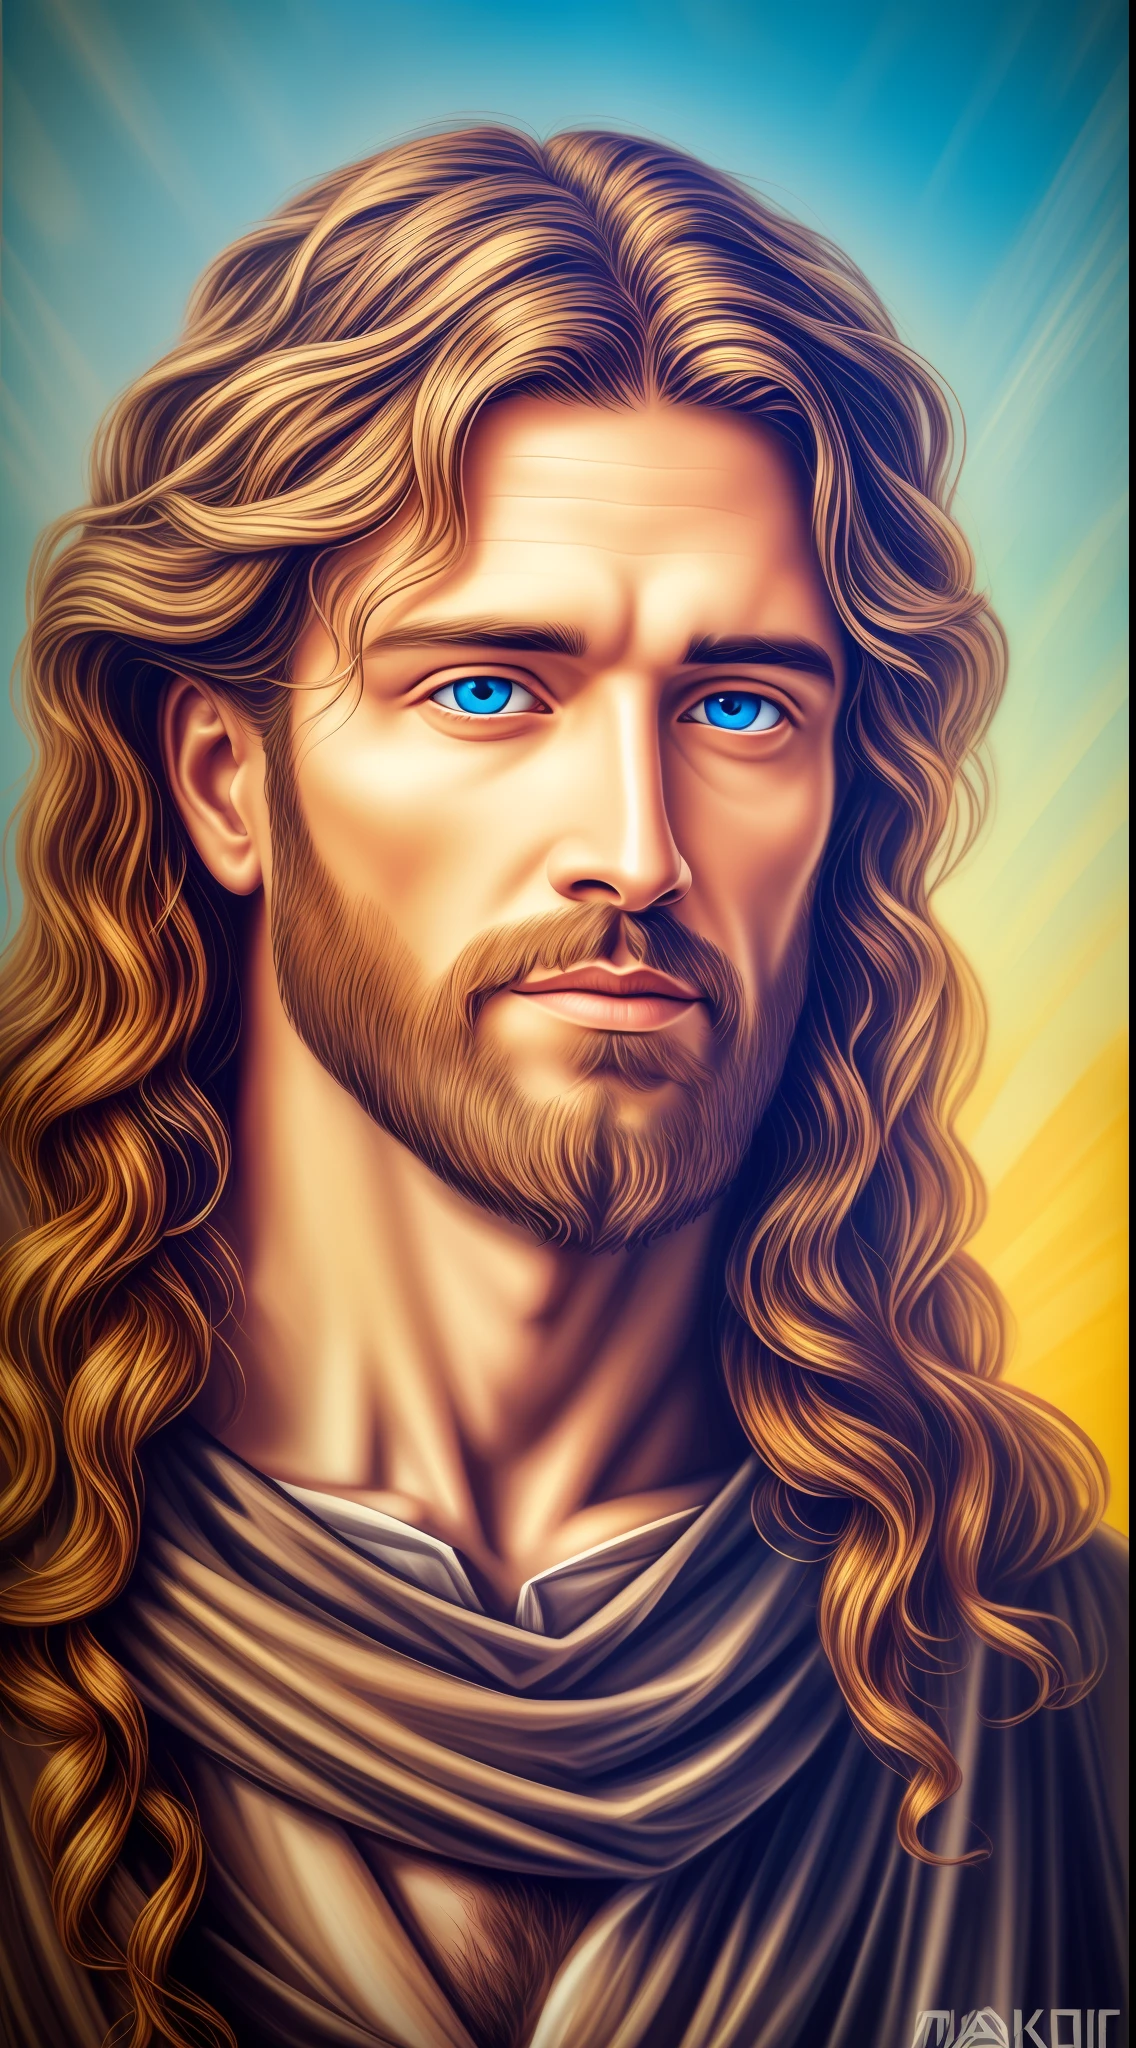 4K, 8K Portrait of a handsome Jesus , Jesus Christ, real blue eyes, sunny day, intricate details.